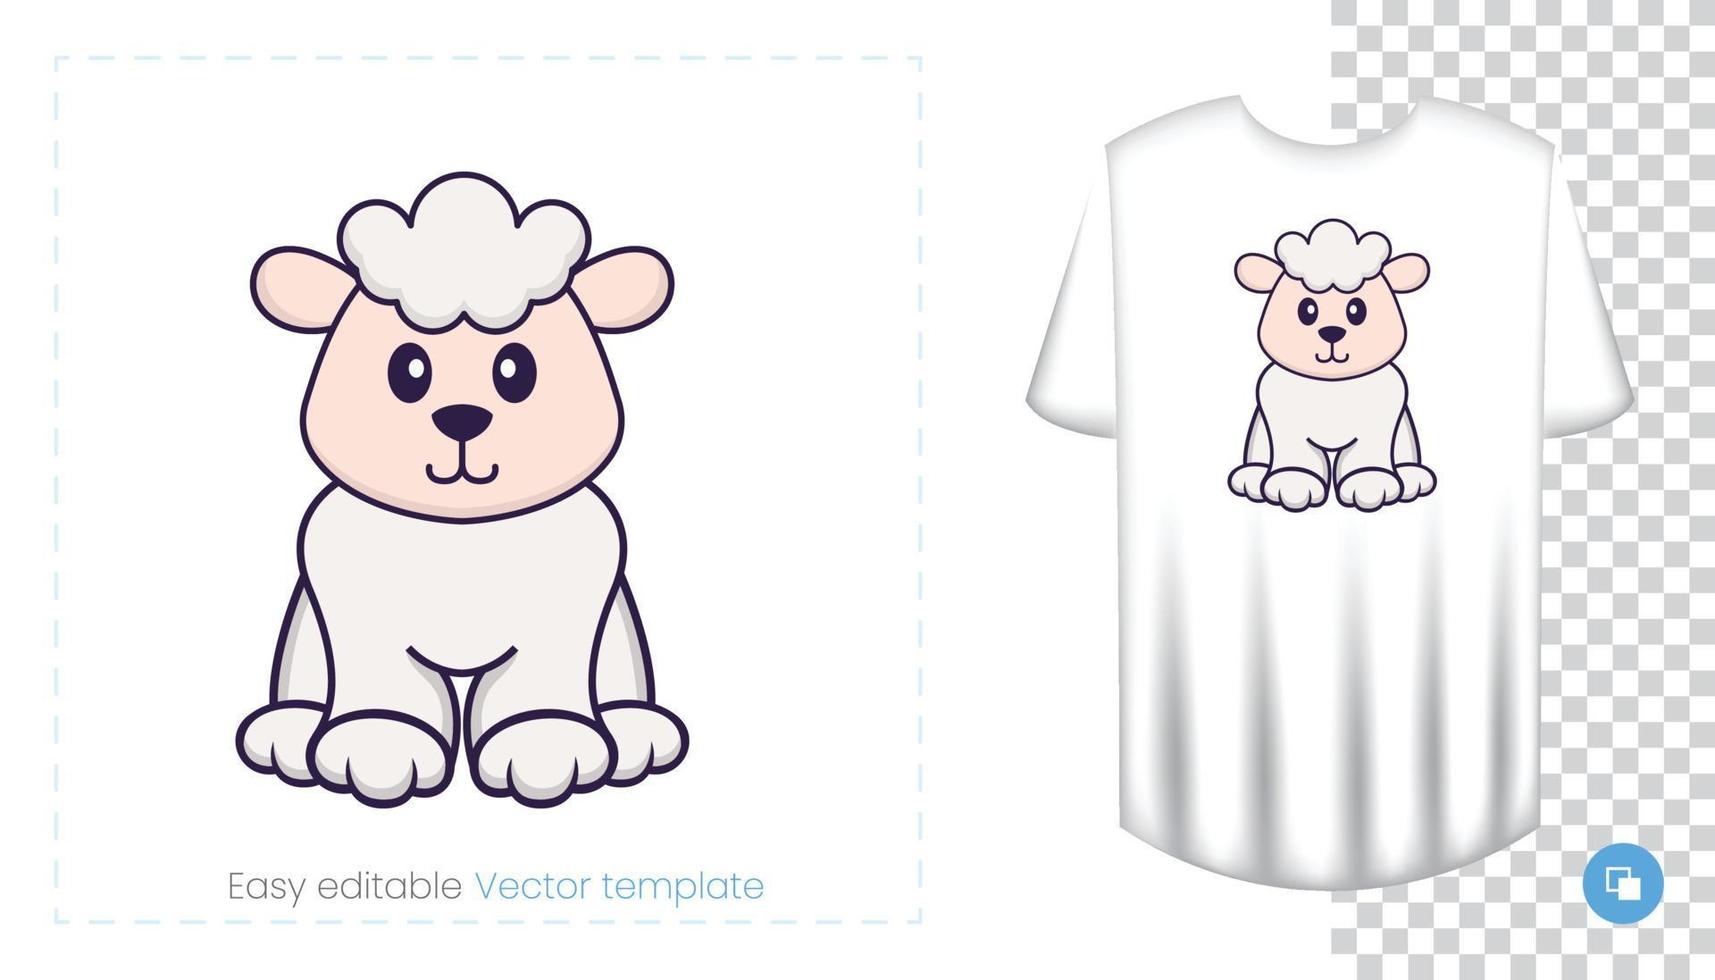 personagem de ovelhas. impressões em t-shirts, camisolas, estojos para telemóveis, lembranças. ilustração isolada do vetor no fundo branco.